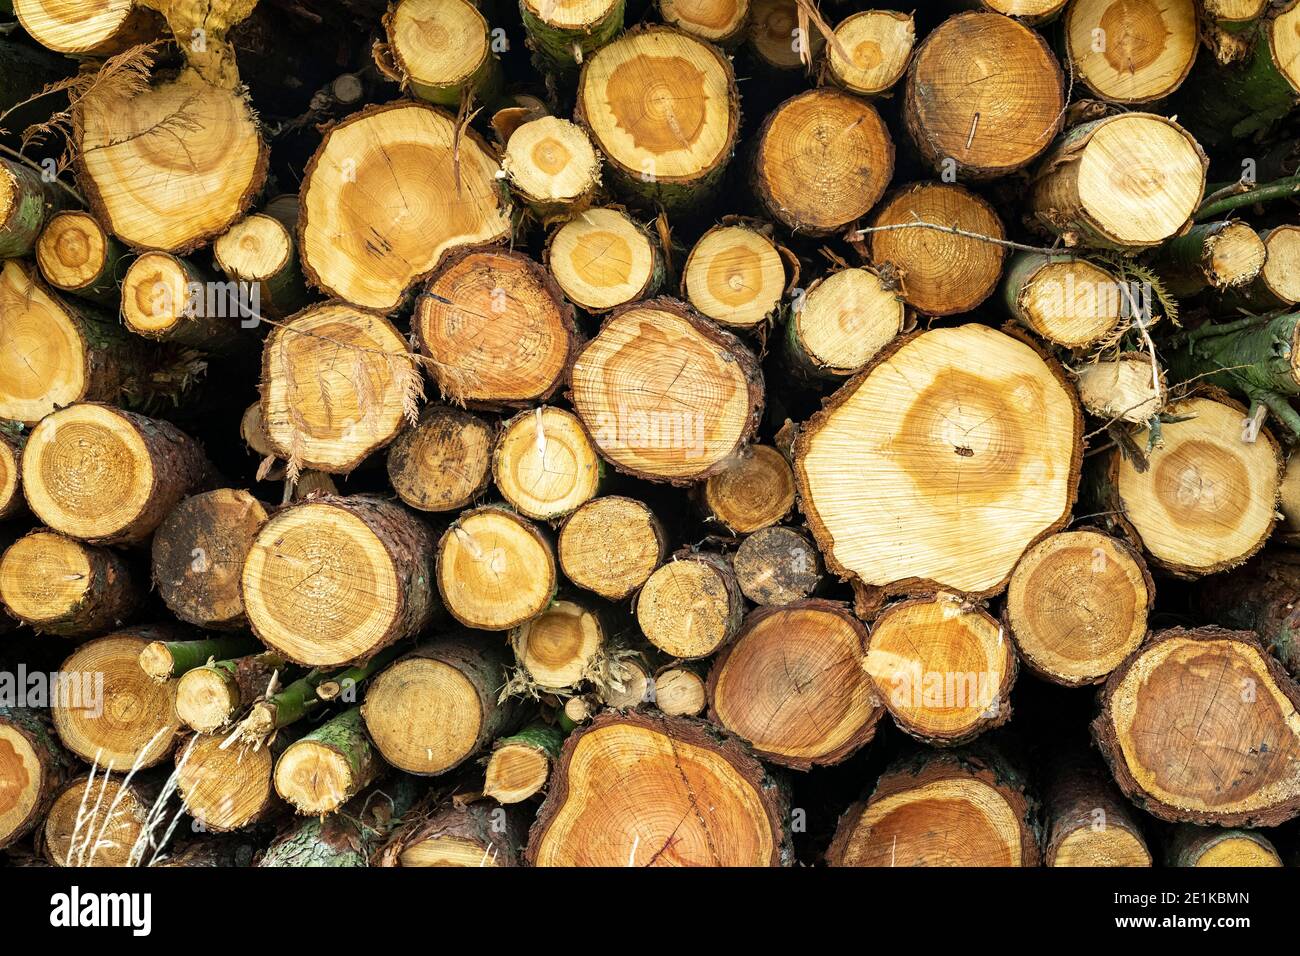 Holzstapel frisch gesägtes Holz von gehackten Ästen, England, Großbritannien Stockfoto